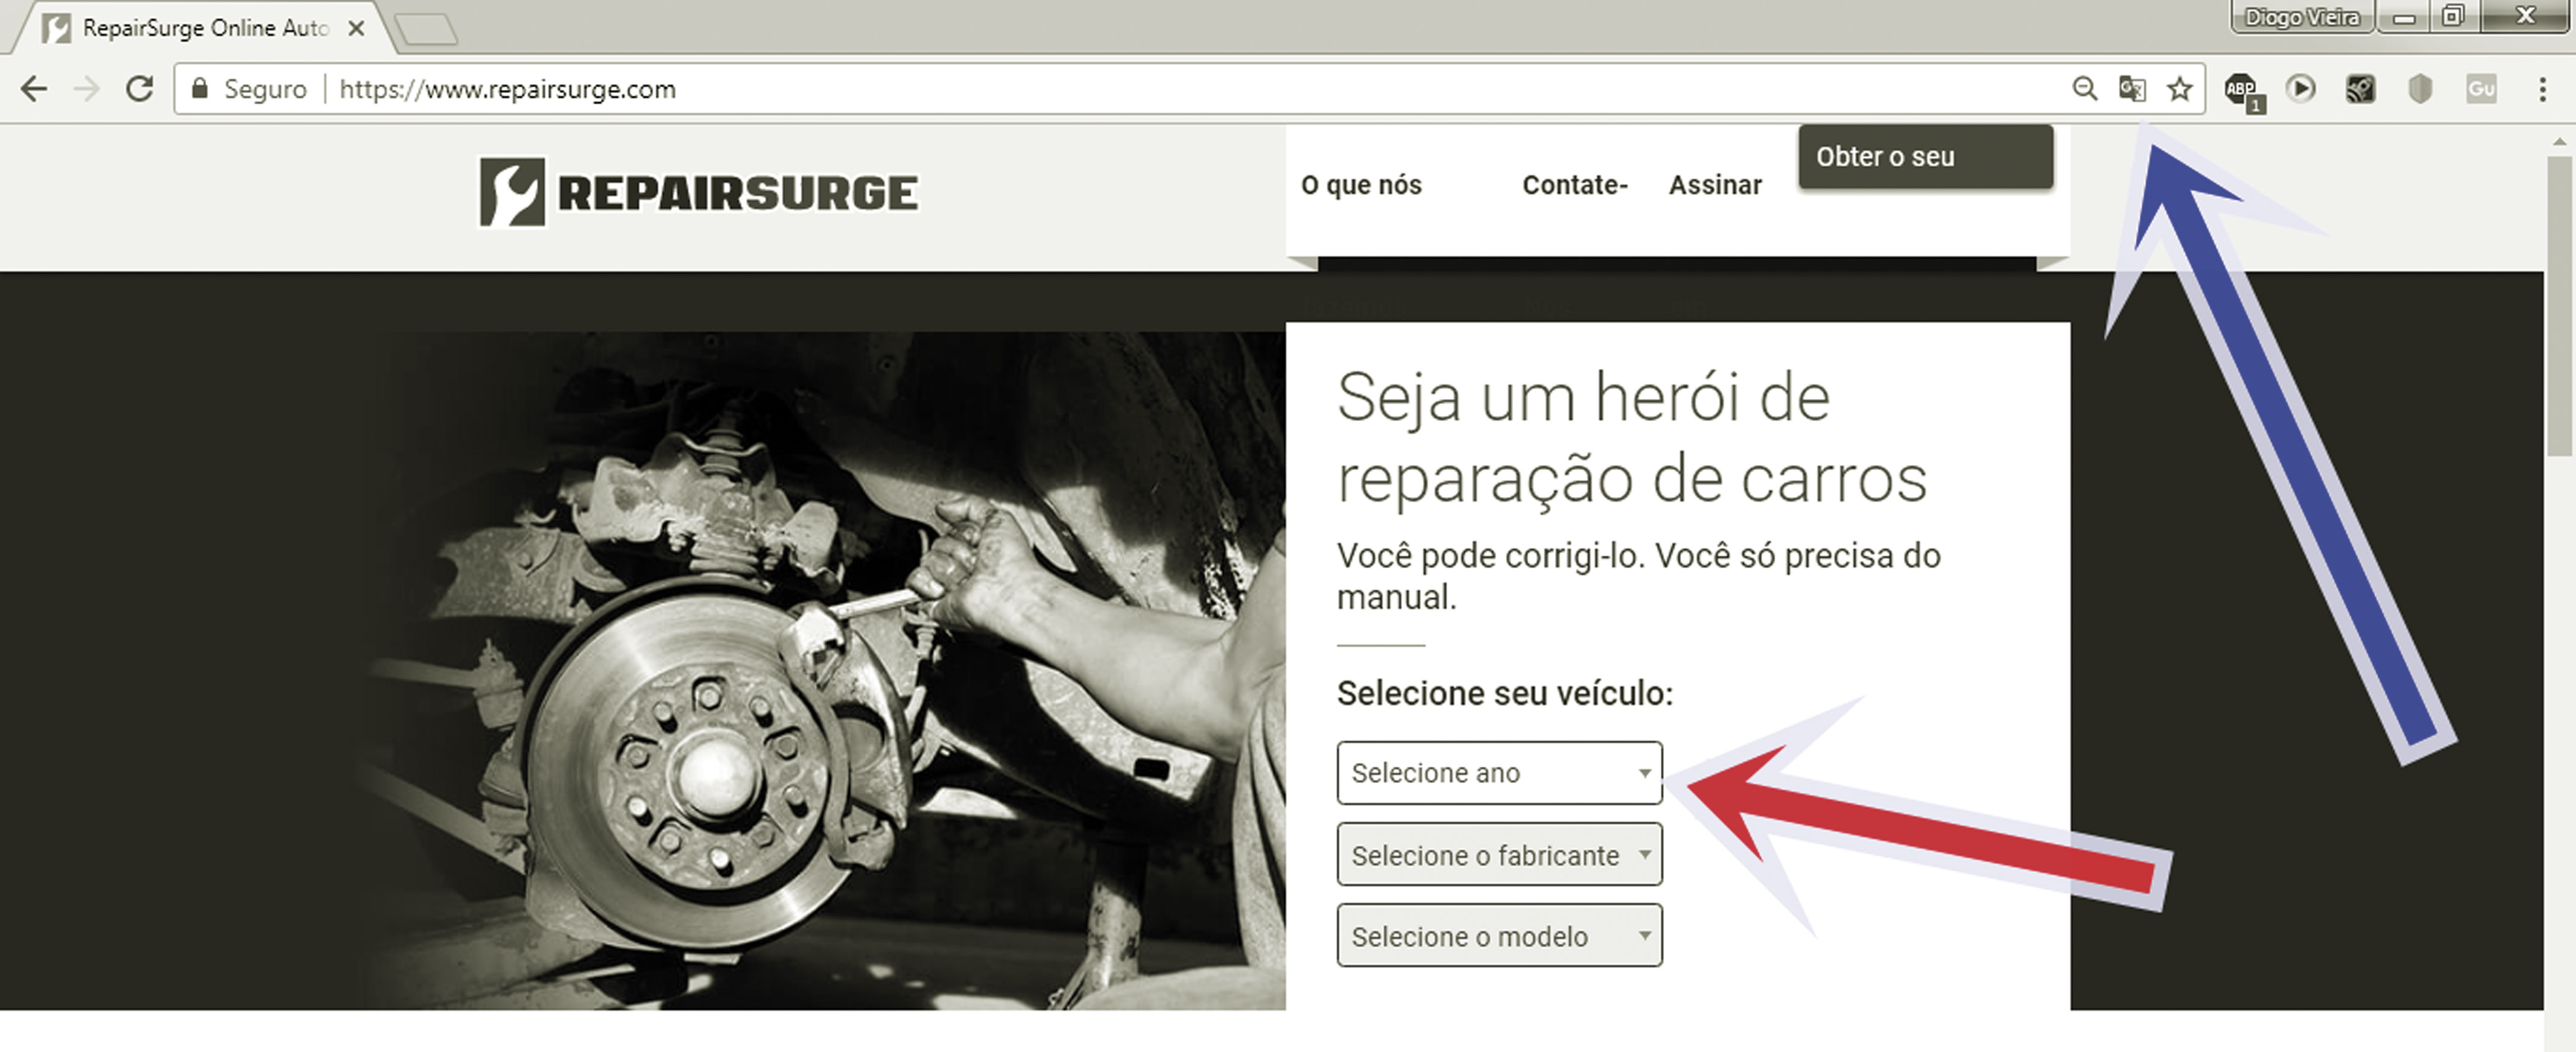 Figura 1- Página inicial do REPAIRSURGE aberta no navegador Google Chrome.  Tradução de inglês-português em um clique